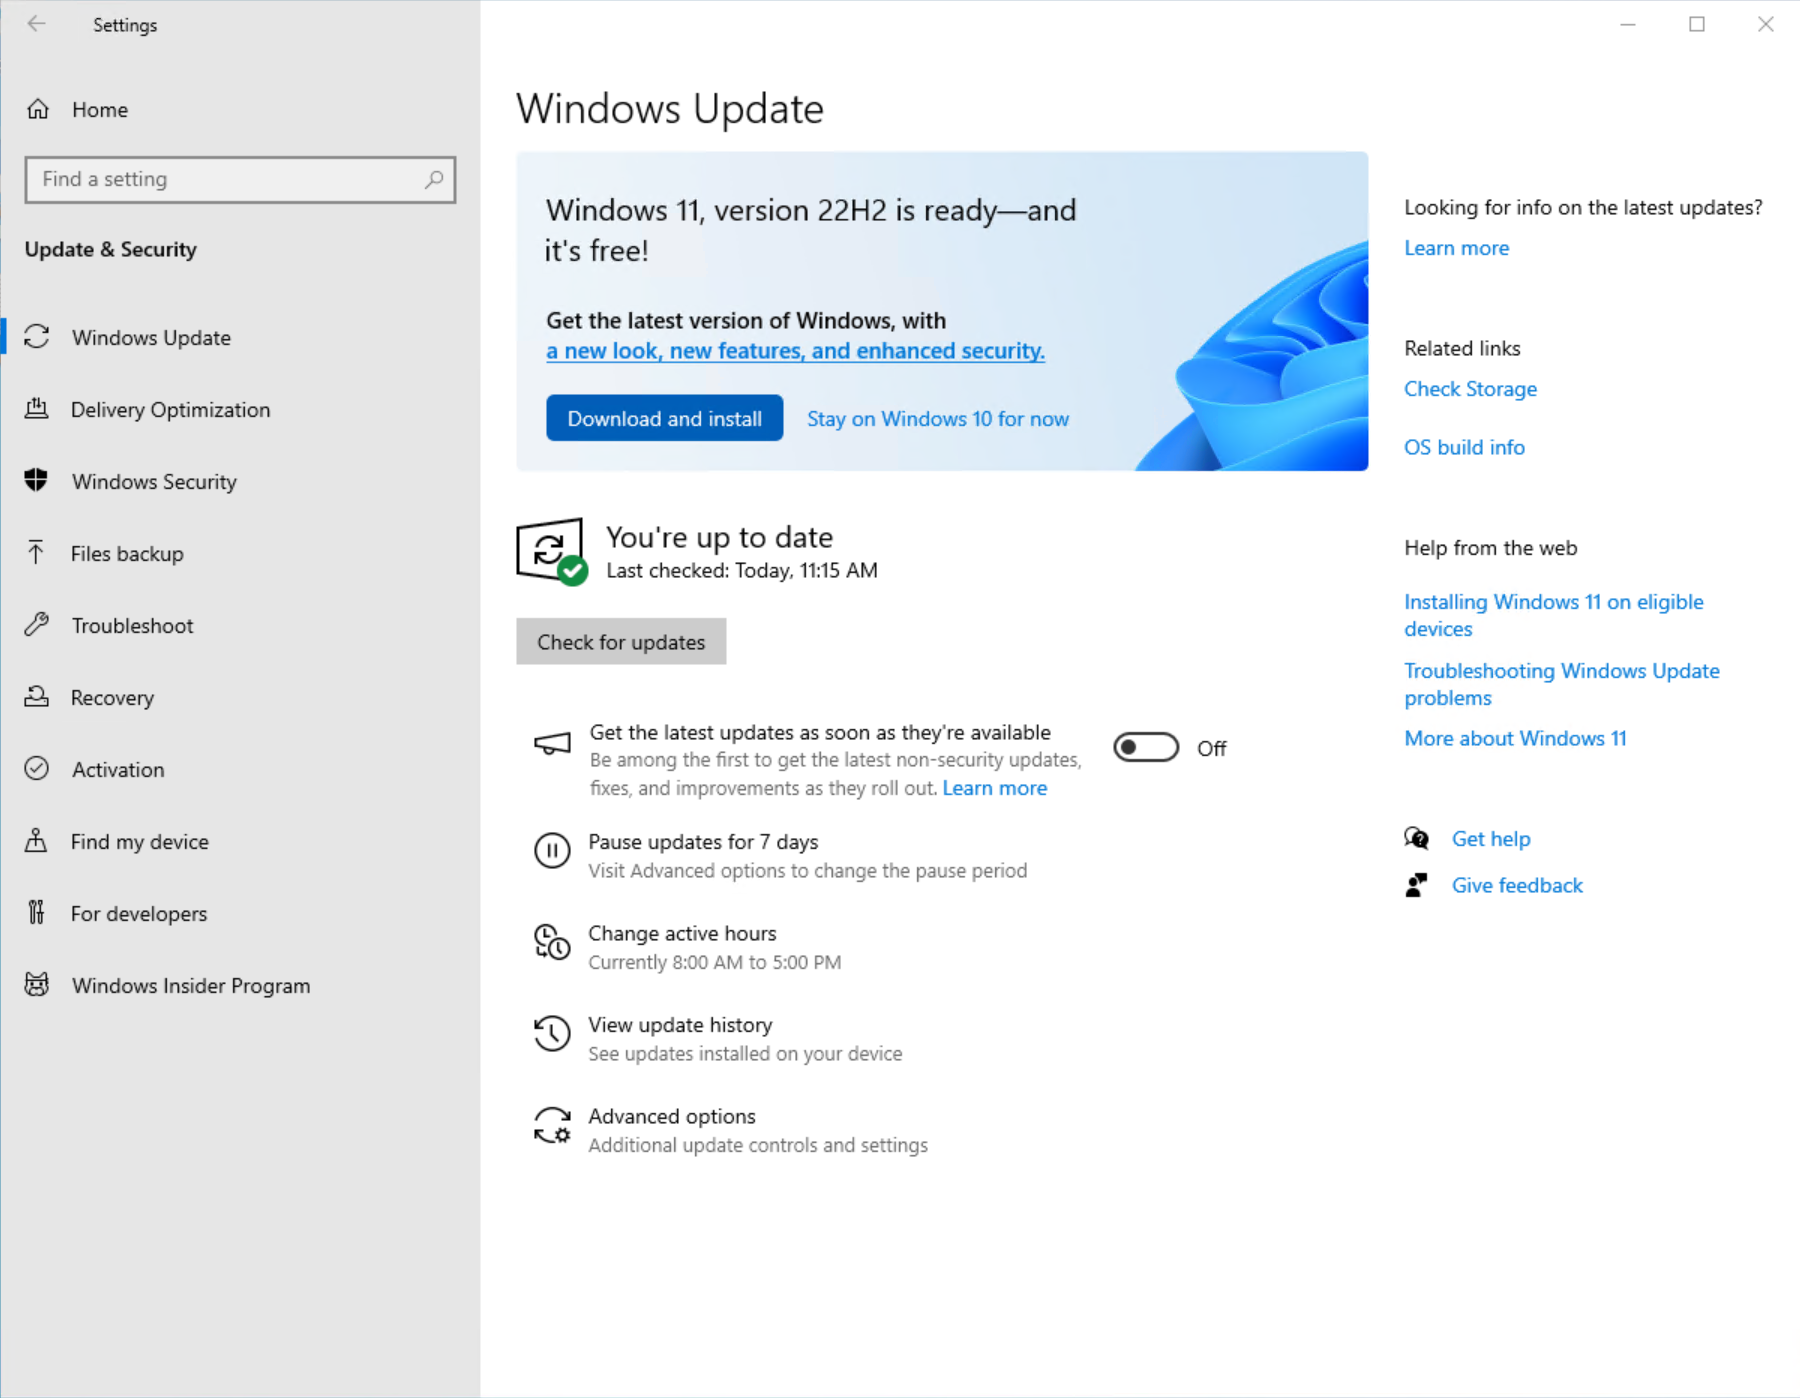 Captura de pantalla de la página de Windows Update de Configuración que muestra que Windows 11 está listo para descargarse e instalarse.